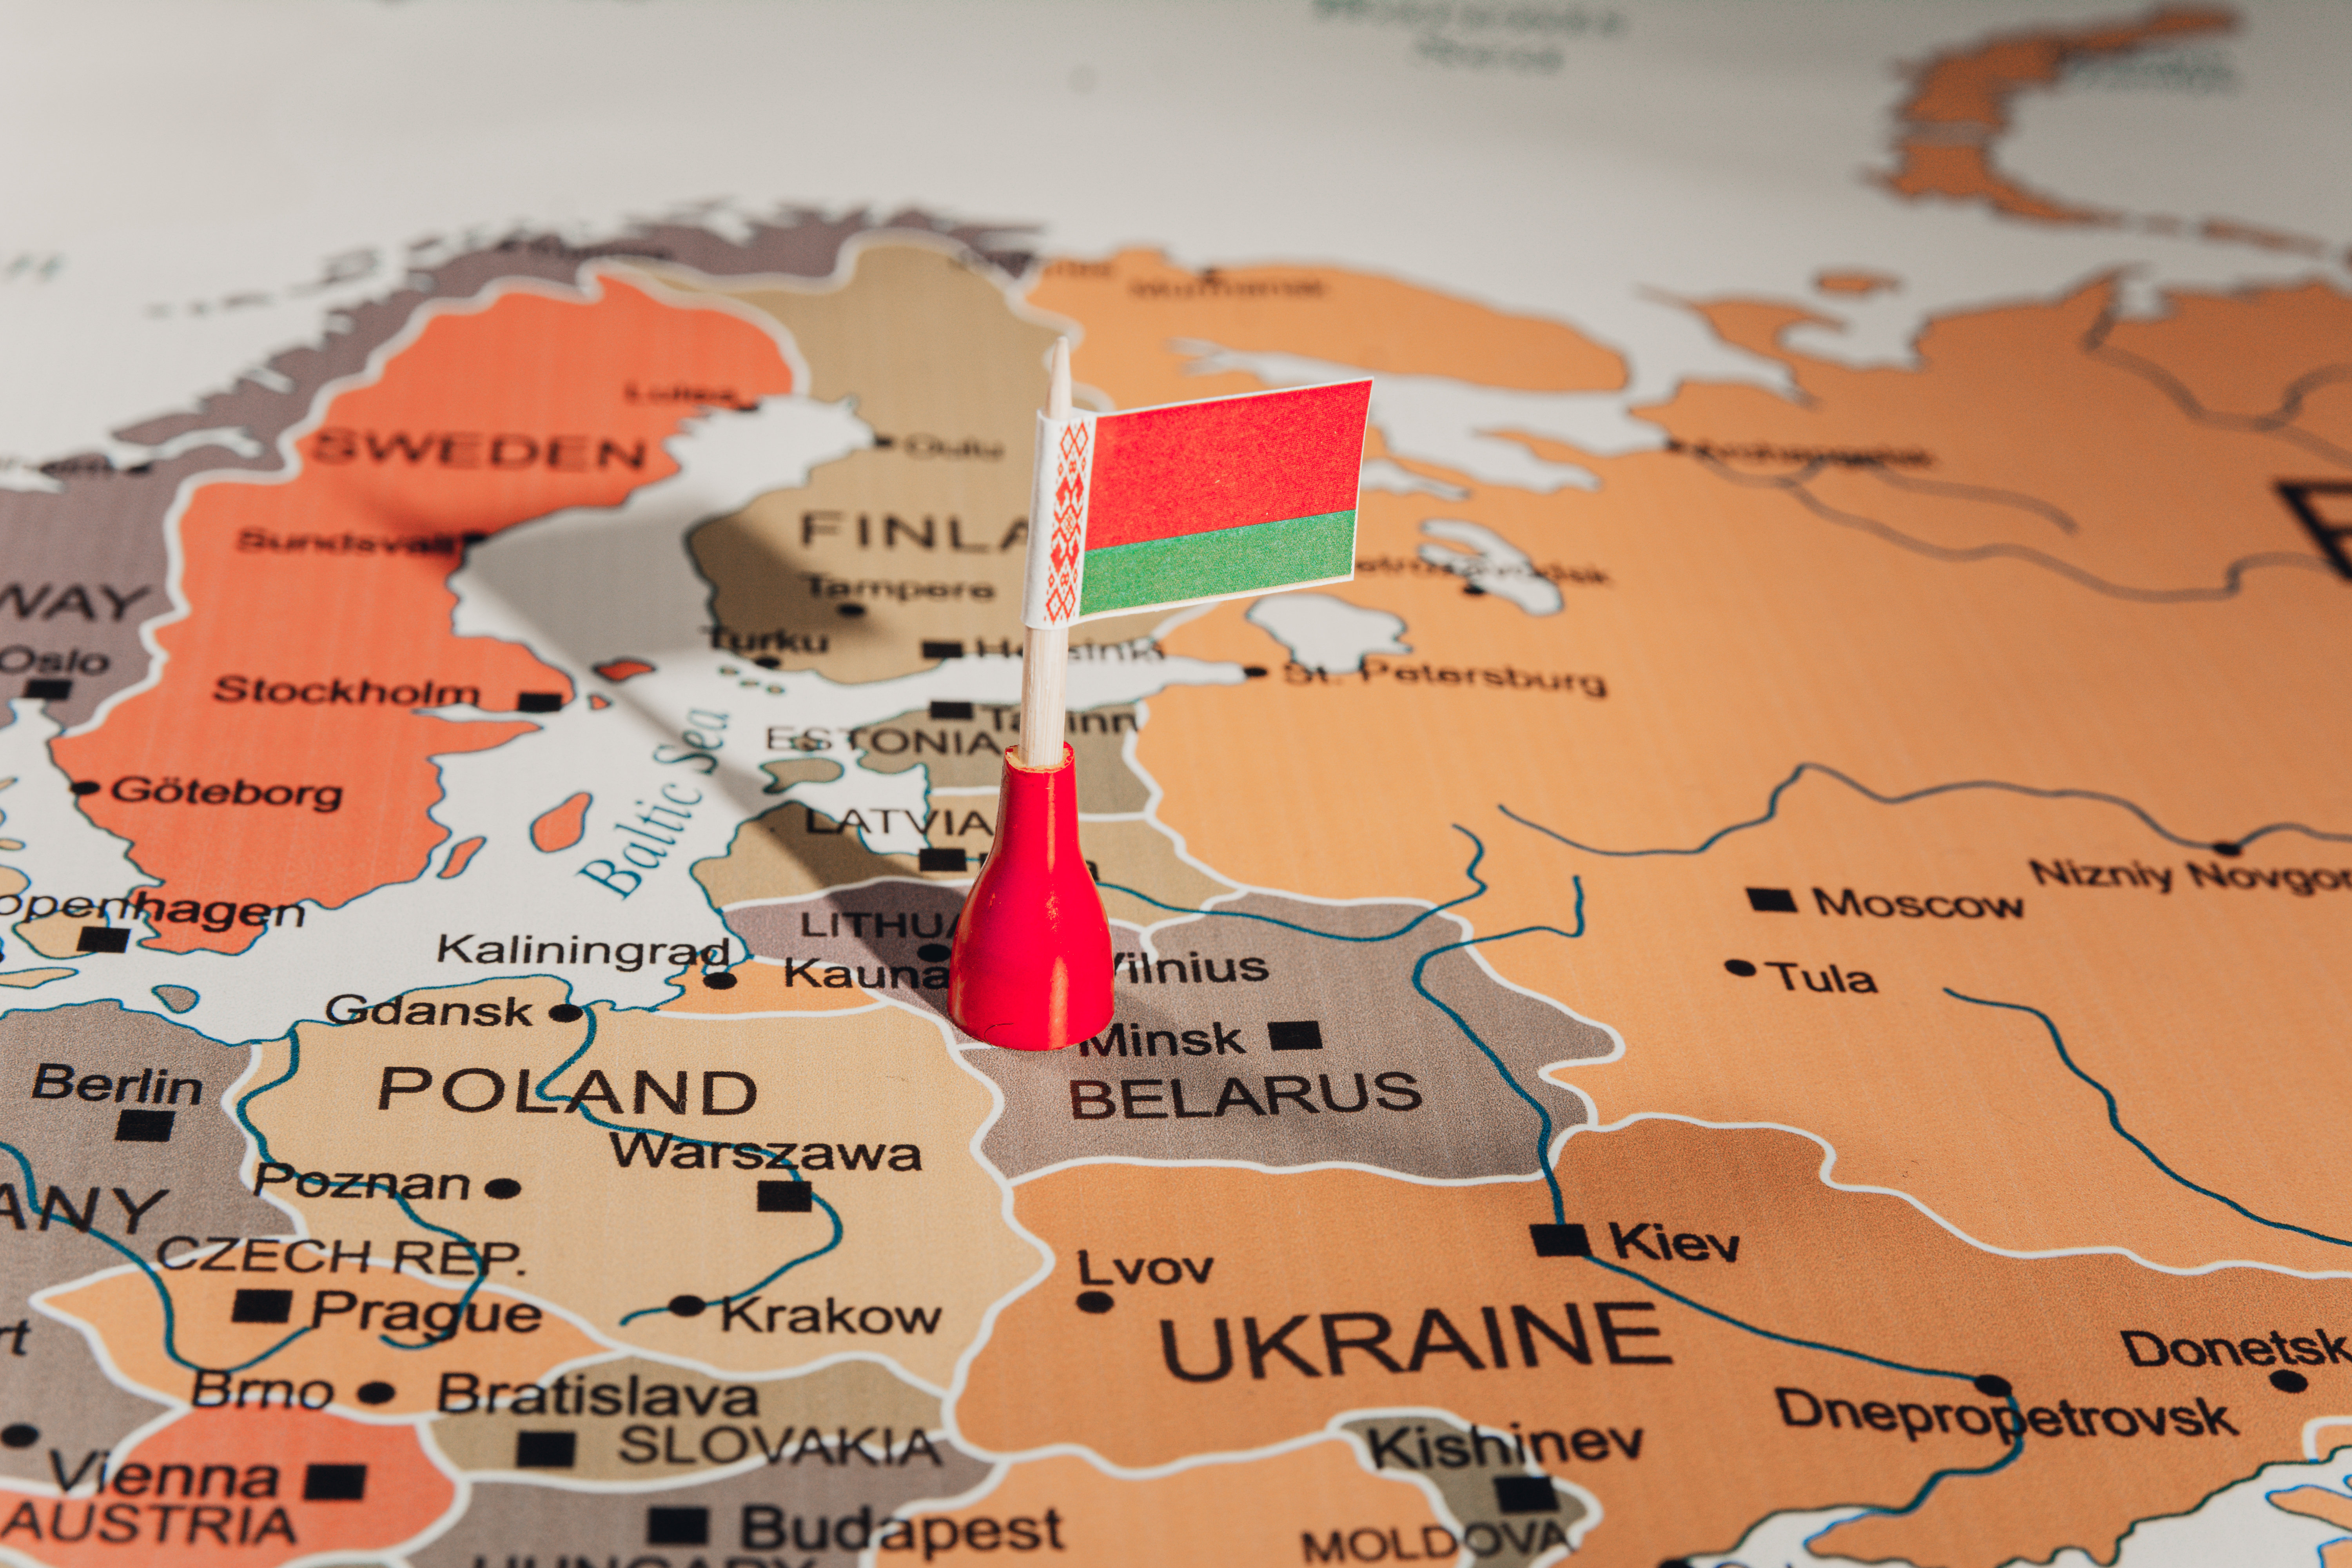 Belarusul închide frontierele terestre, din cauza pandemiei. Opoziția crede că se urmărește „ascunderea crimelor” liderului